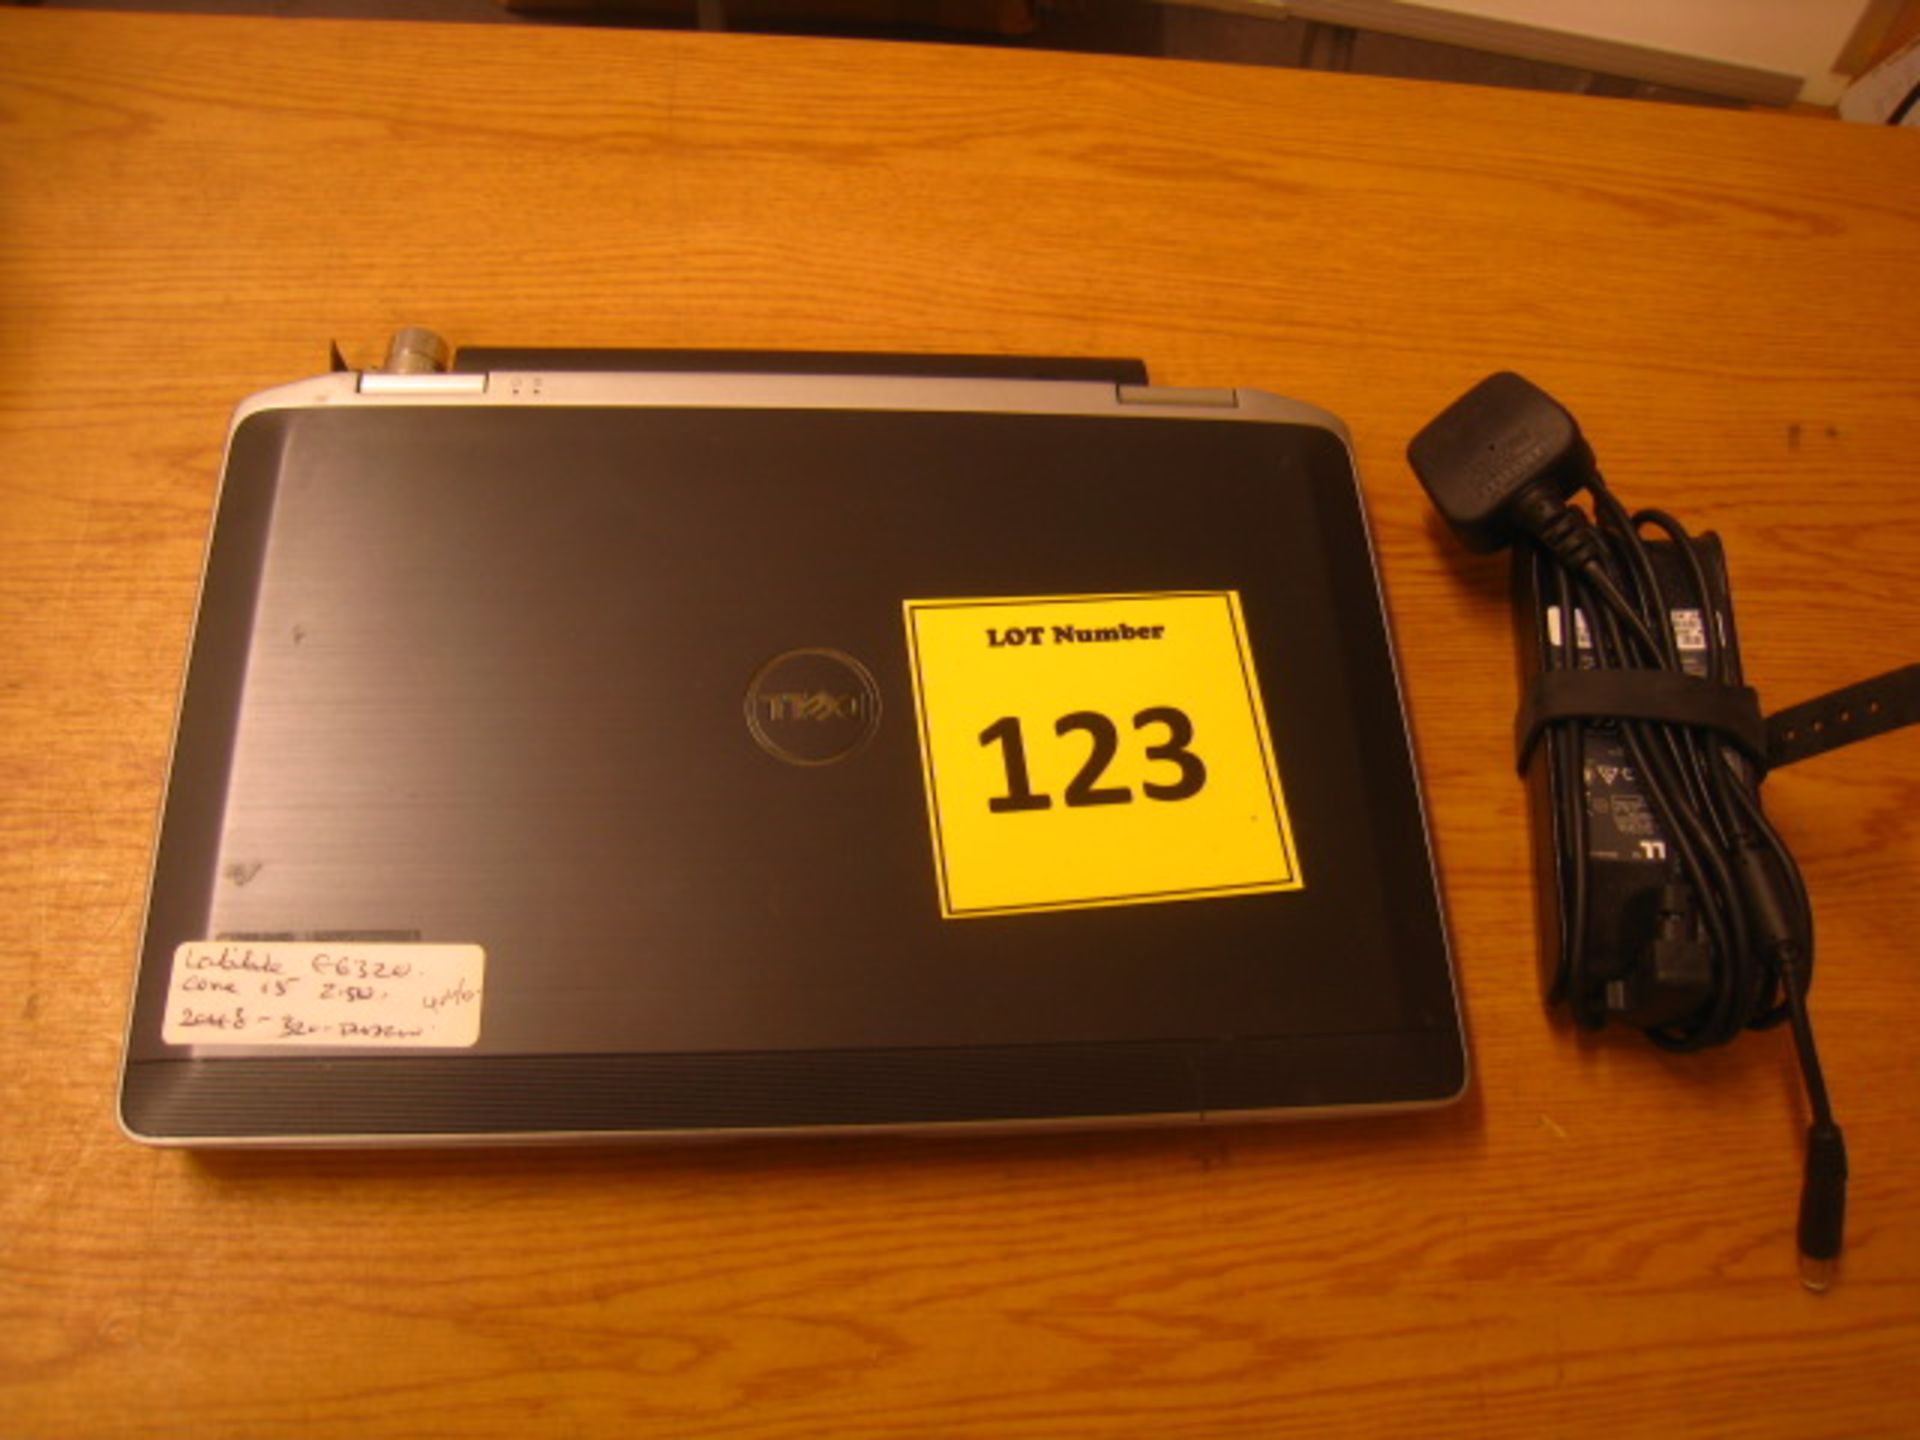 DELL LATITUDE E6320 LAPTOP. CORE i5 2.5GHZ PROCESSOR, 4GB RAM, 320GB HDD, DVDRW WITH PSU. WINDOWS - Image 2 of 2